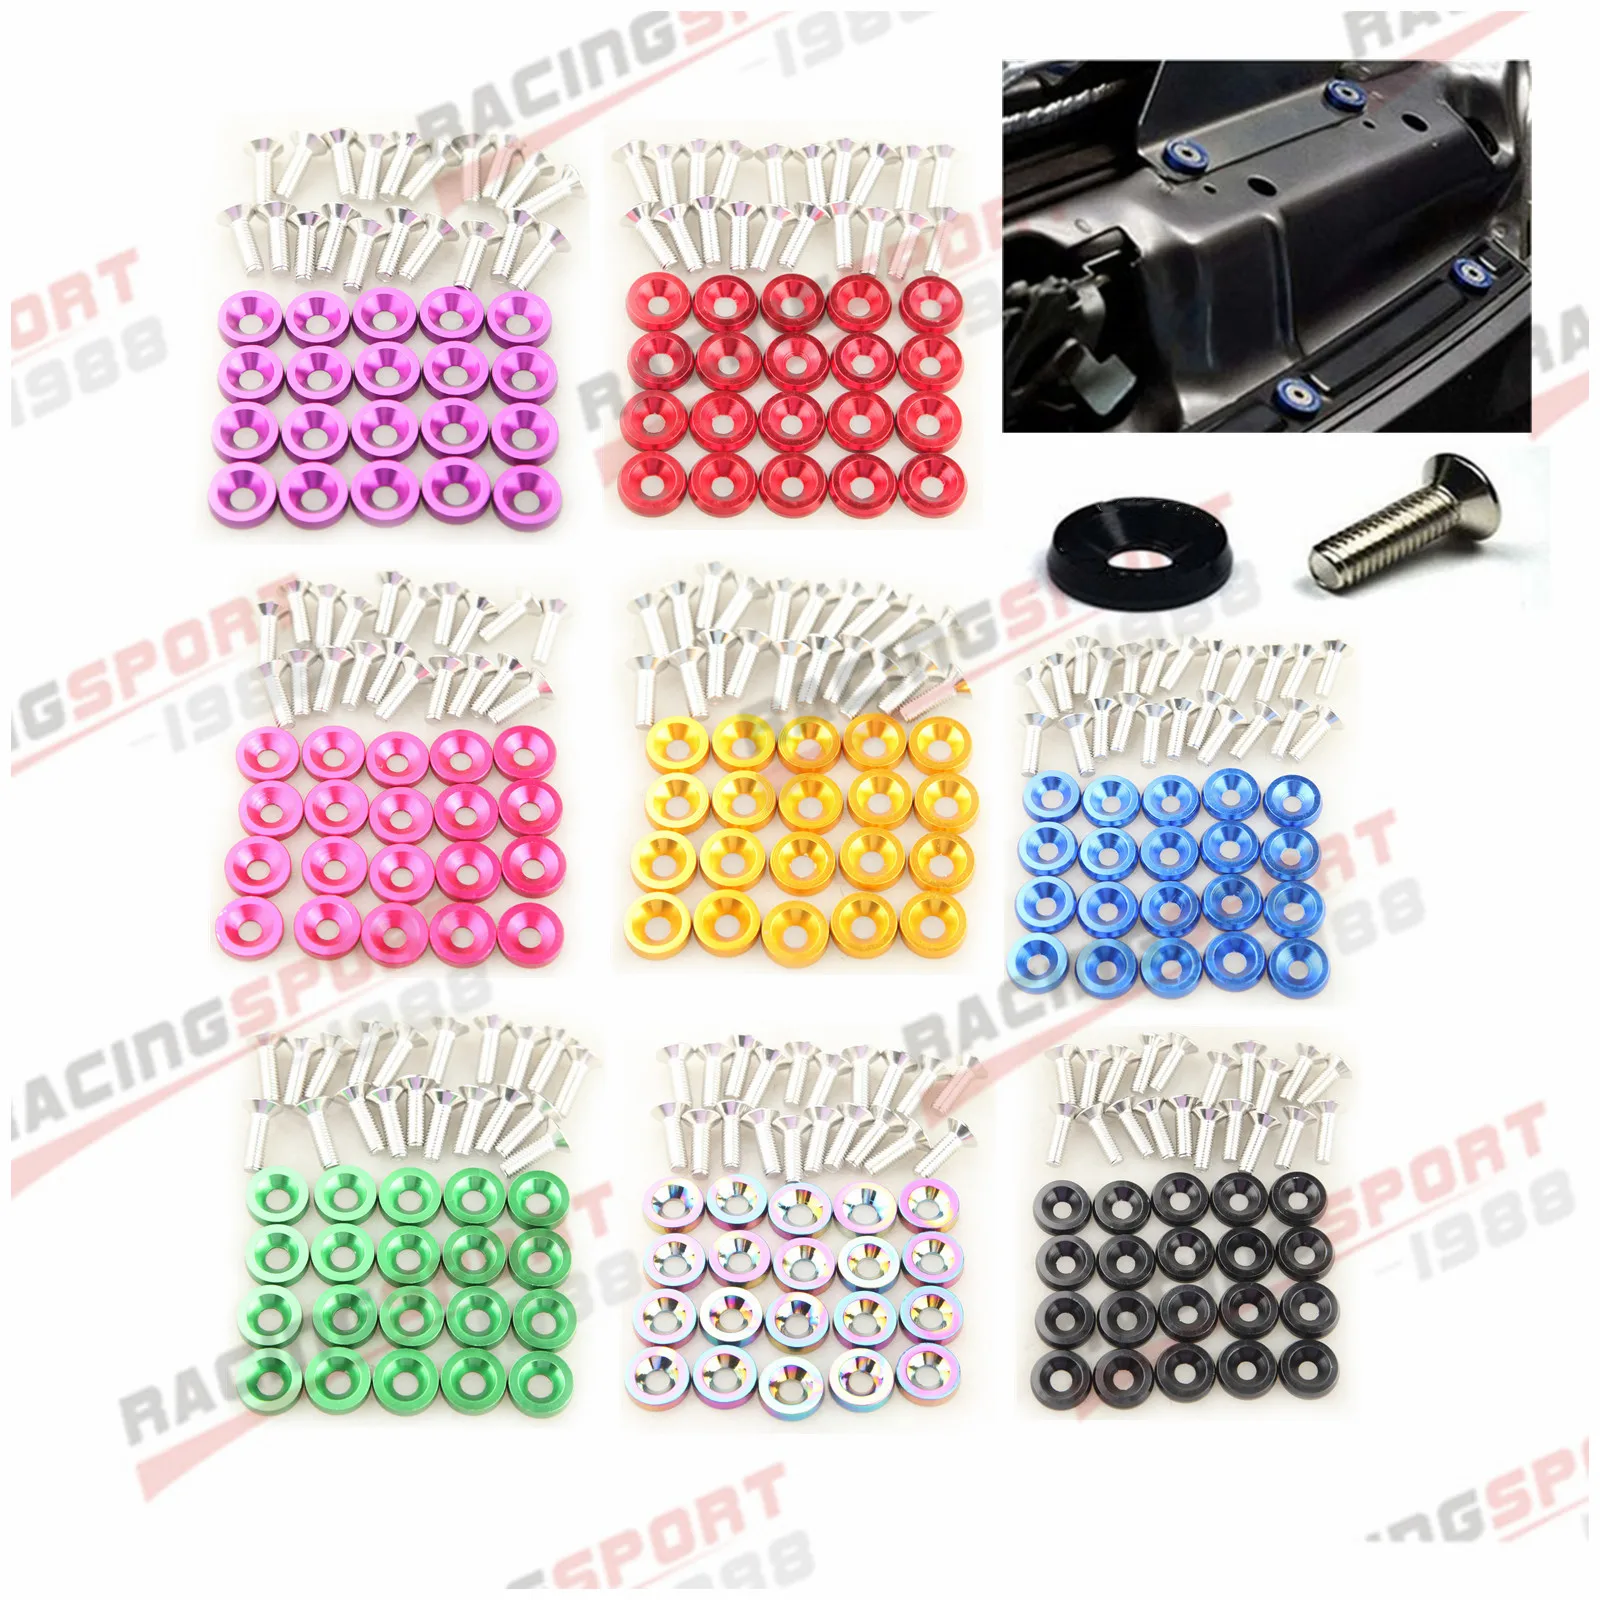 

20PCS Billet Aluminum Fender/ Bumper Washer/ Bolt Engine Bay Dress Up Kit Pink/Black/Neo/Golden/Silver/Red/Blue/Green/Purple/Tan